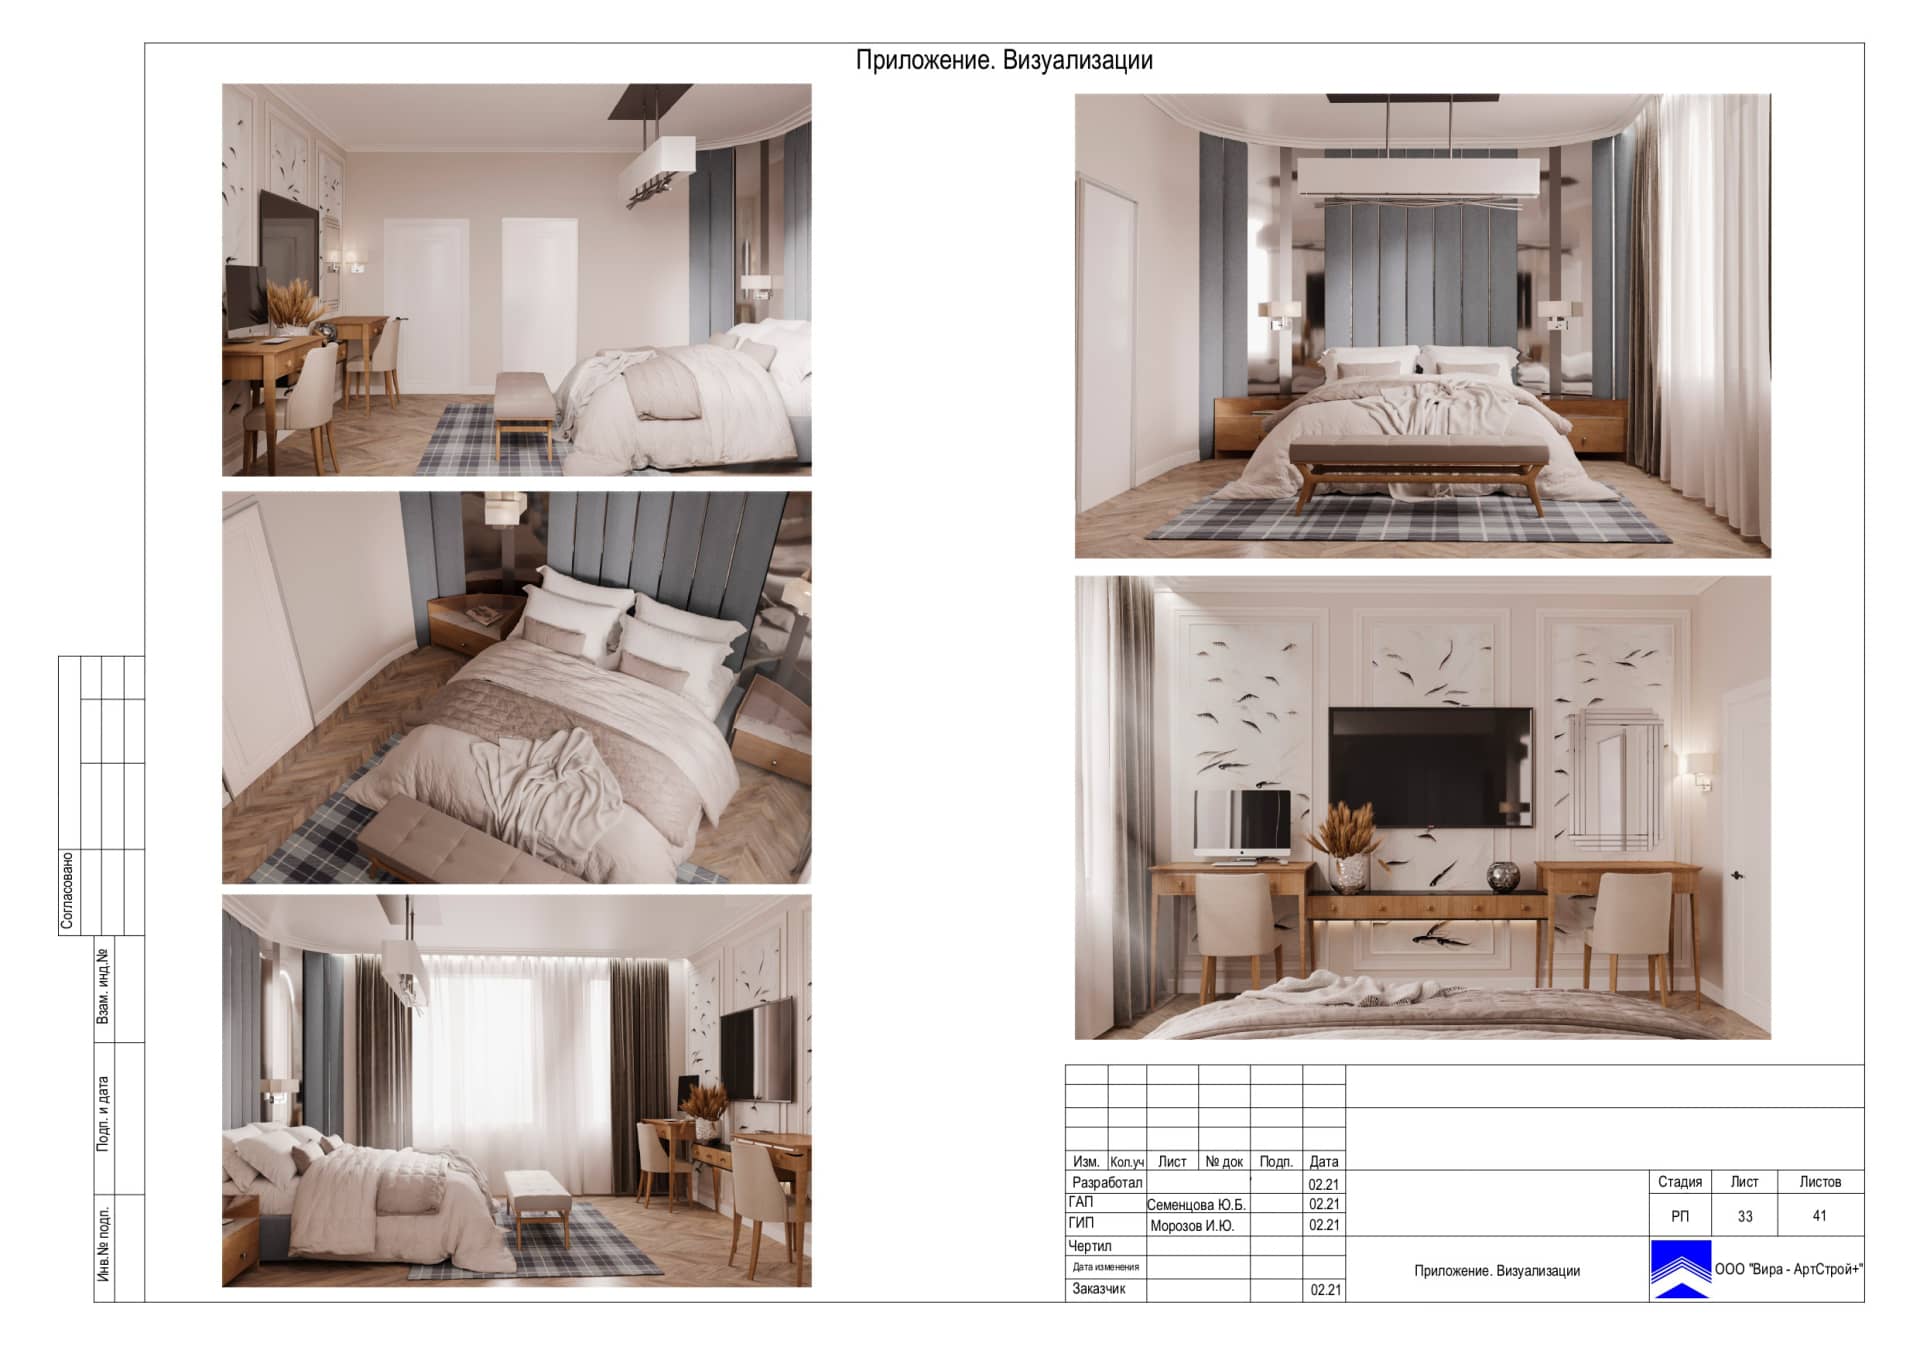 Программа для визуализации дизайна квартиры